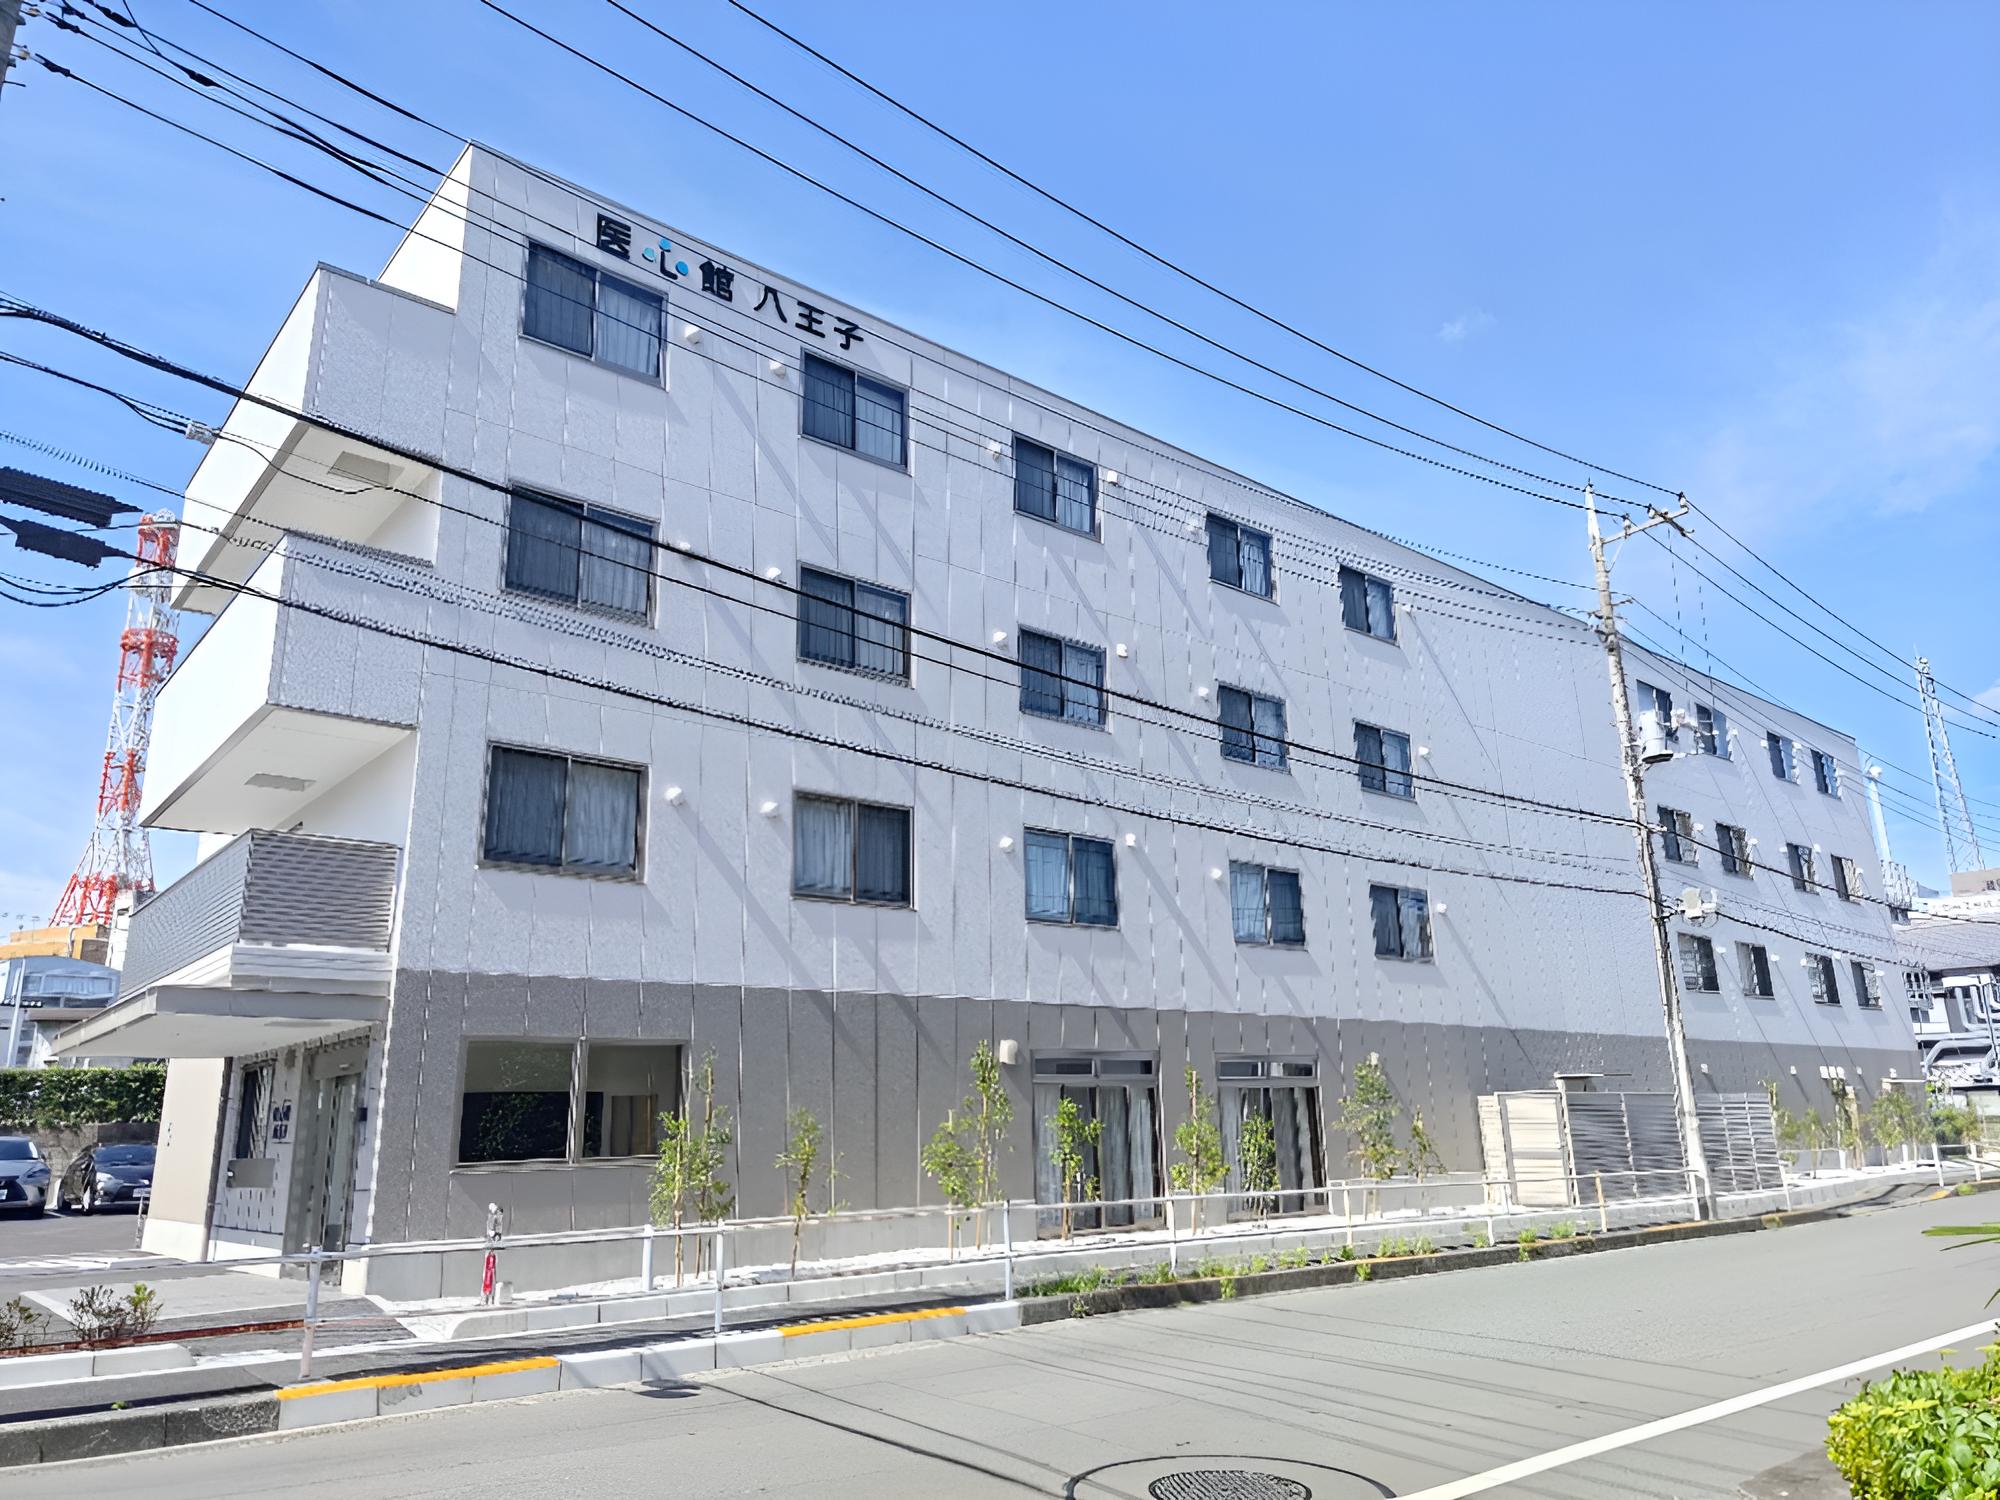 東京都では８施設目となる 有料老人ホーム「医心館 八王子」をオープンしました